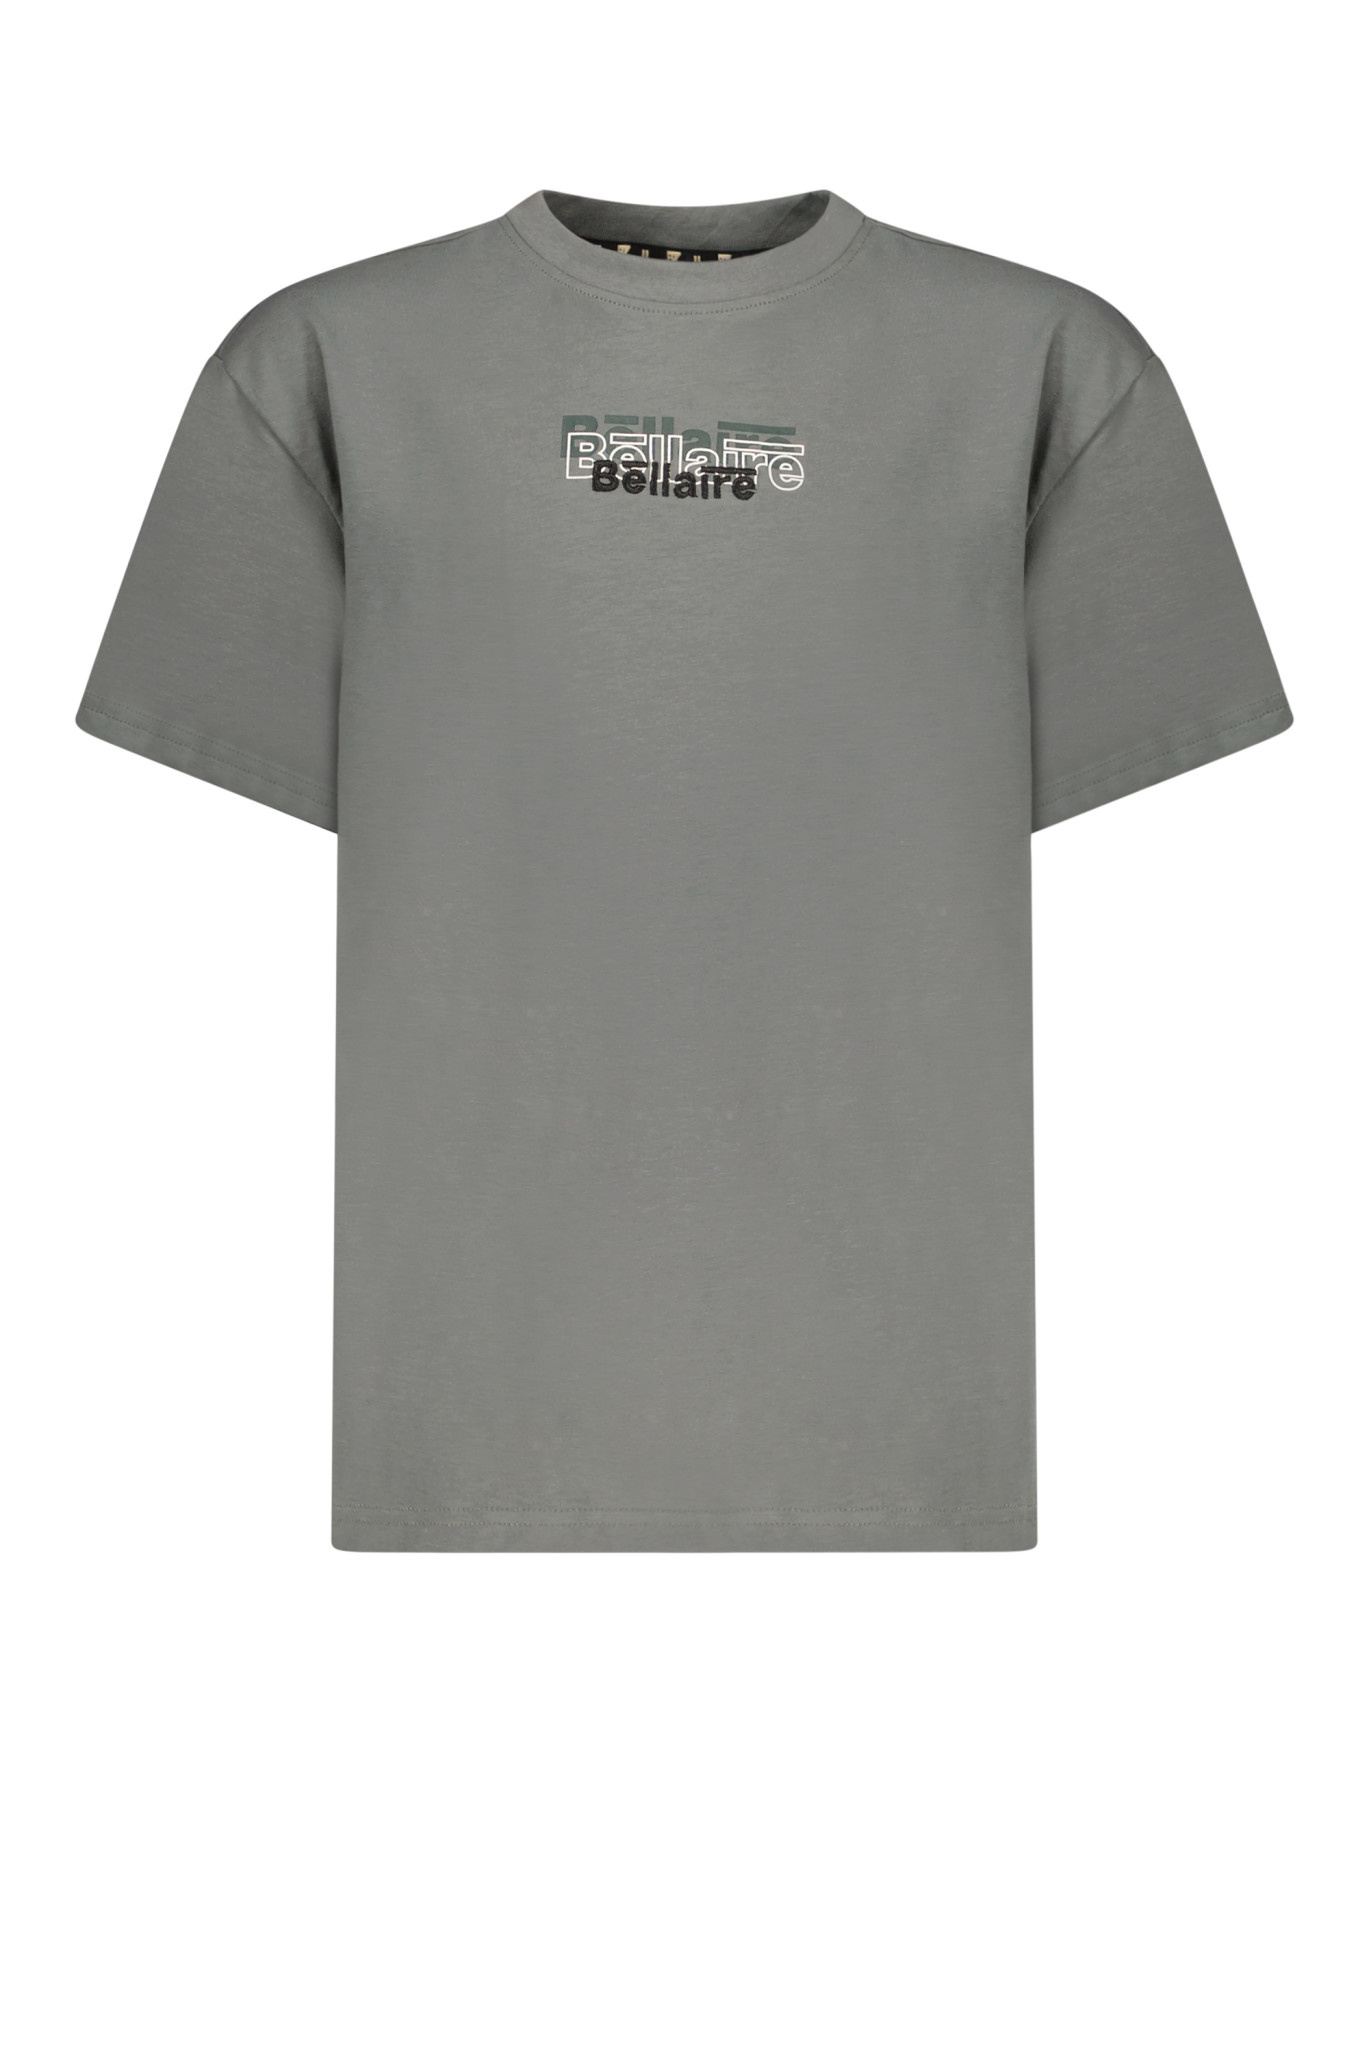 Afbeelding van Bellaire Jongens t-shirt met tripple logo sage